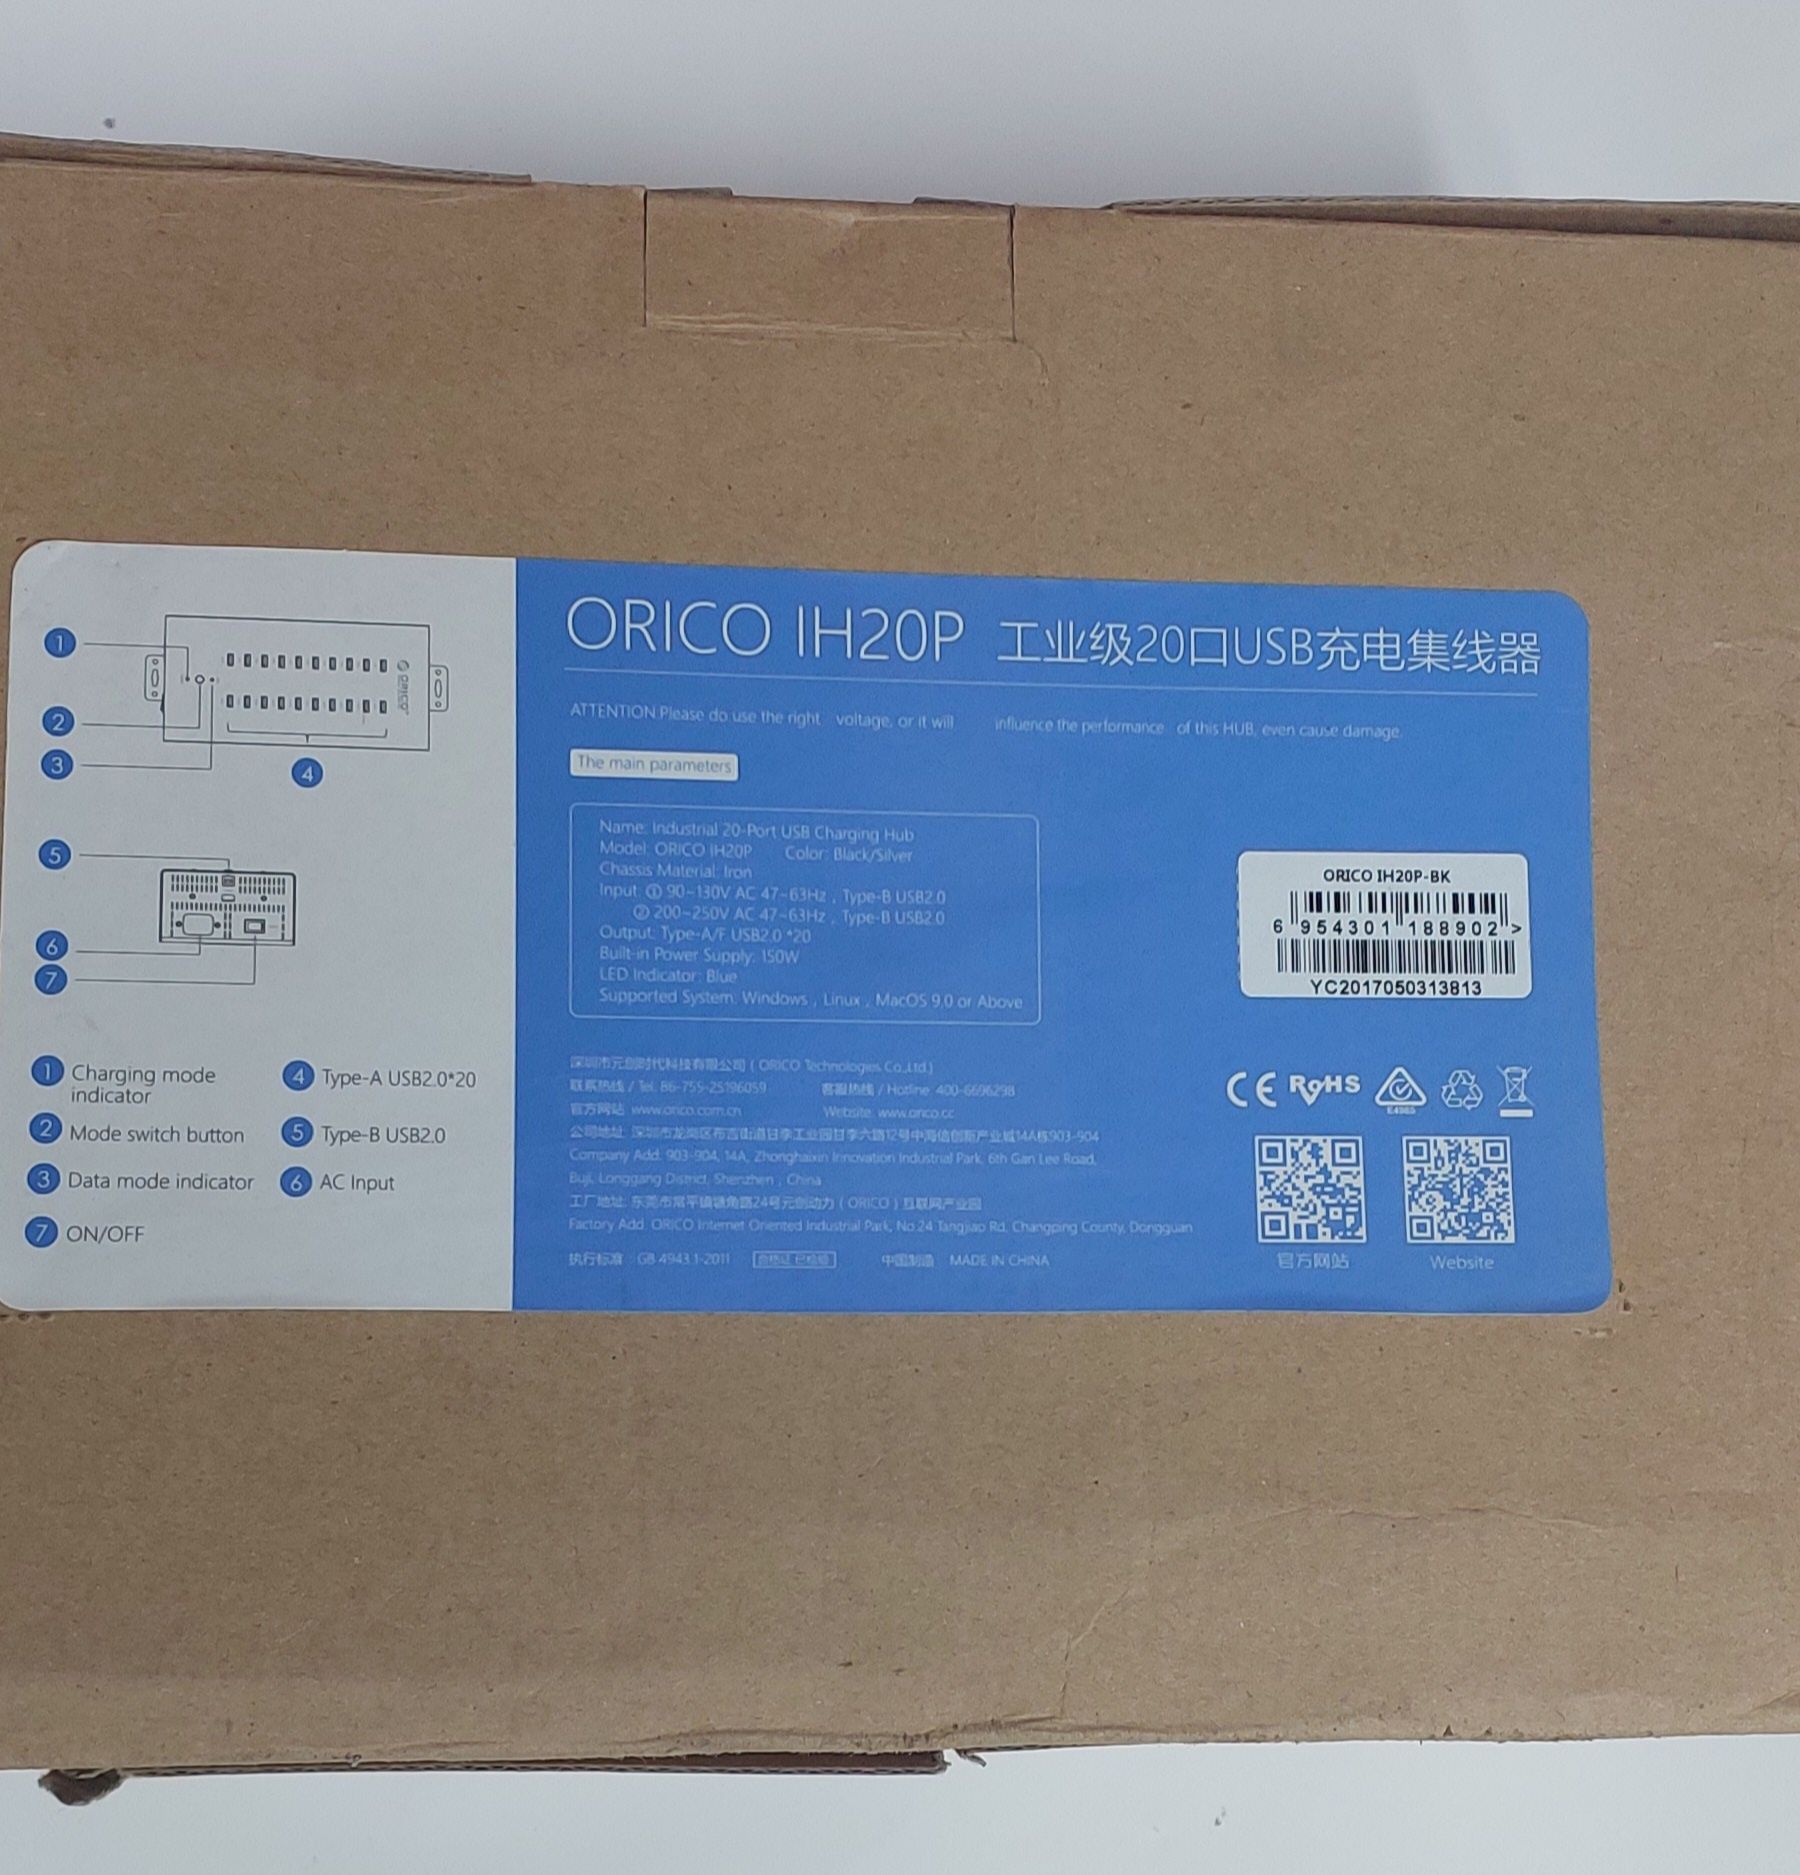 ORICO USB 2.0 hub